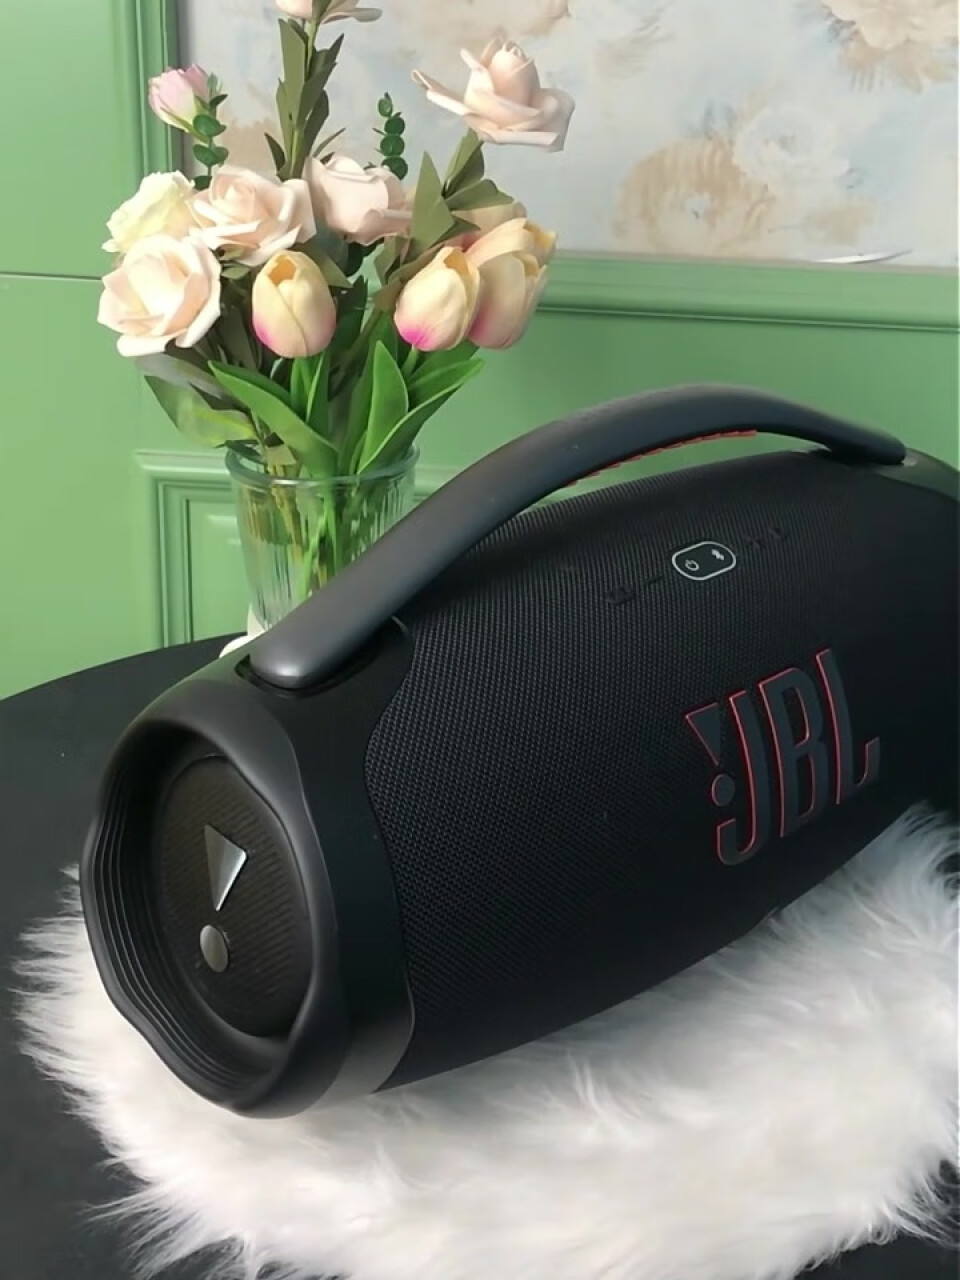 JBL BOOMBOX3 音乐战神三代3代便携式蓝牙音箱 低音炮 户外音箱 IP67防尘防水 Hifi音质 桌面音响 黑色,第2张